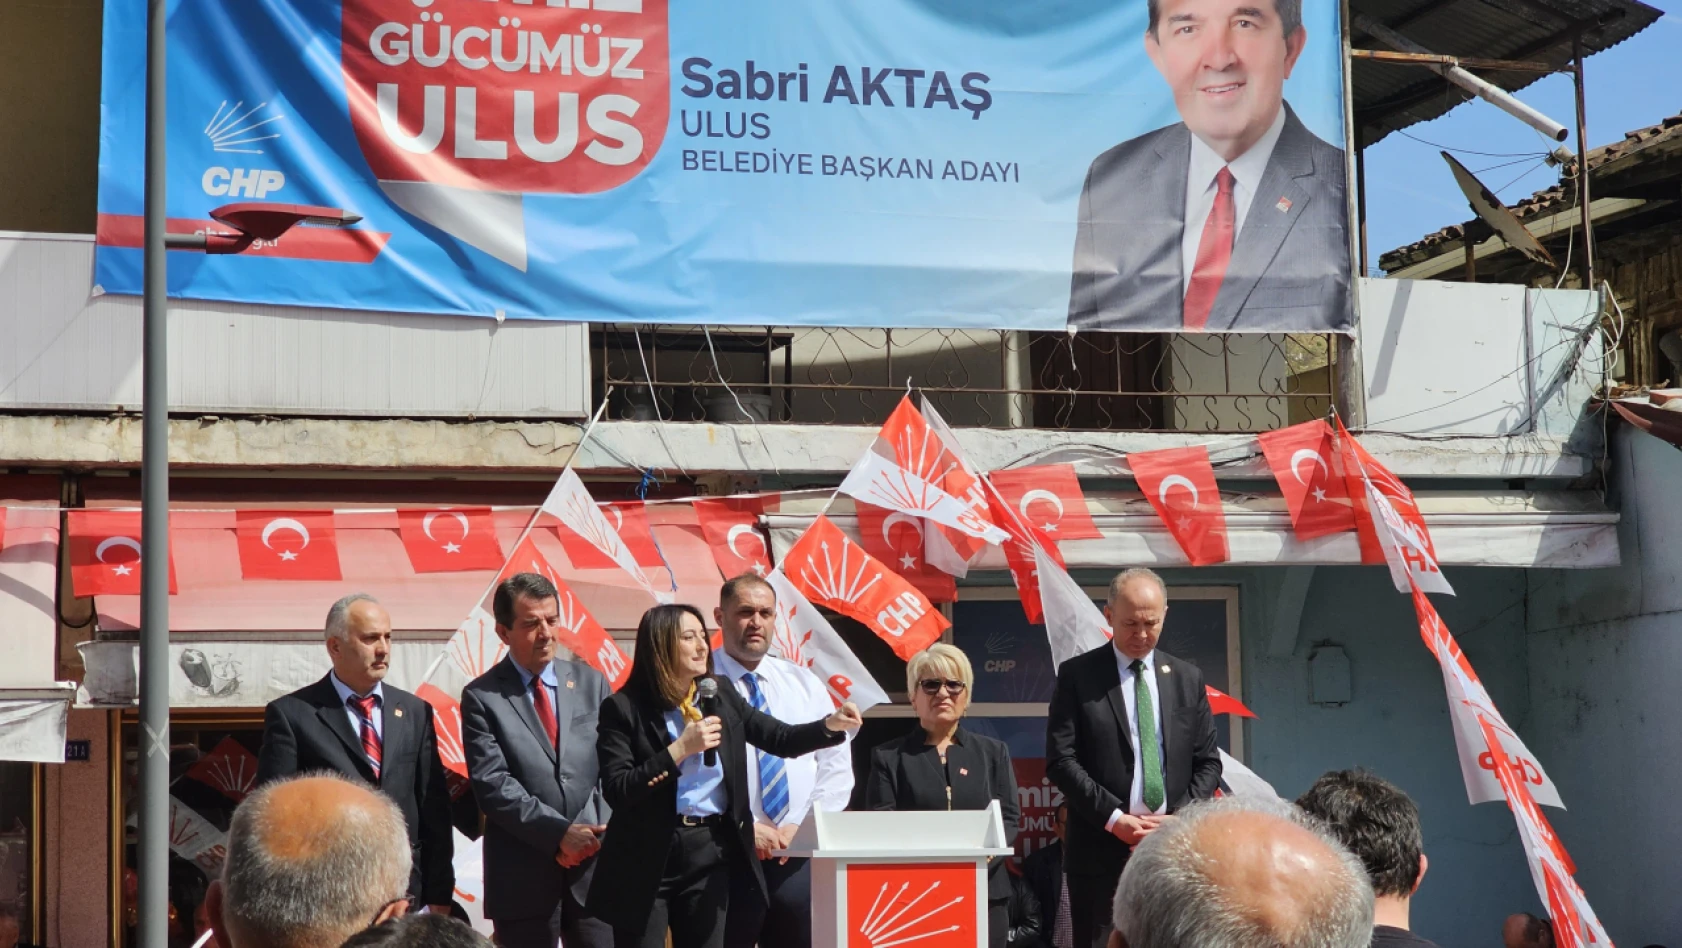 BANKOĞLU: 'ULUS'UN KADERİ DEĞİŞSİN İSTEYENLER SABRİ AKTAŞ DİYOR!'